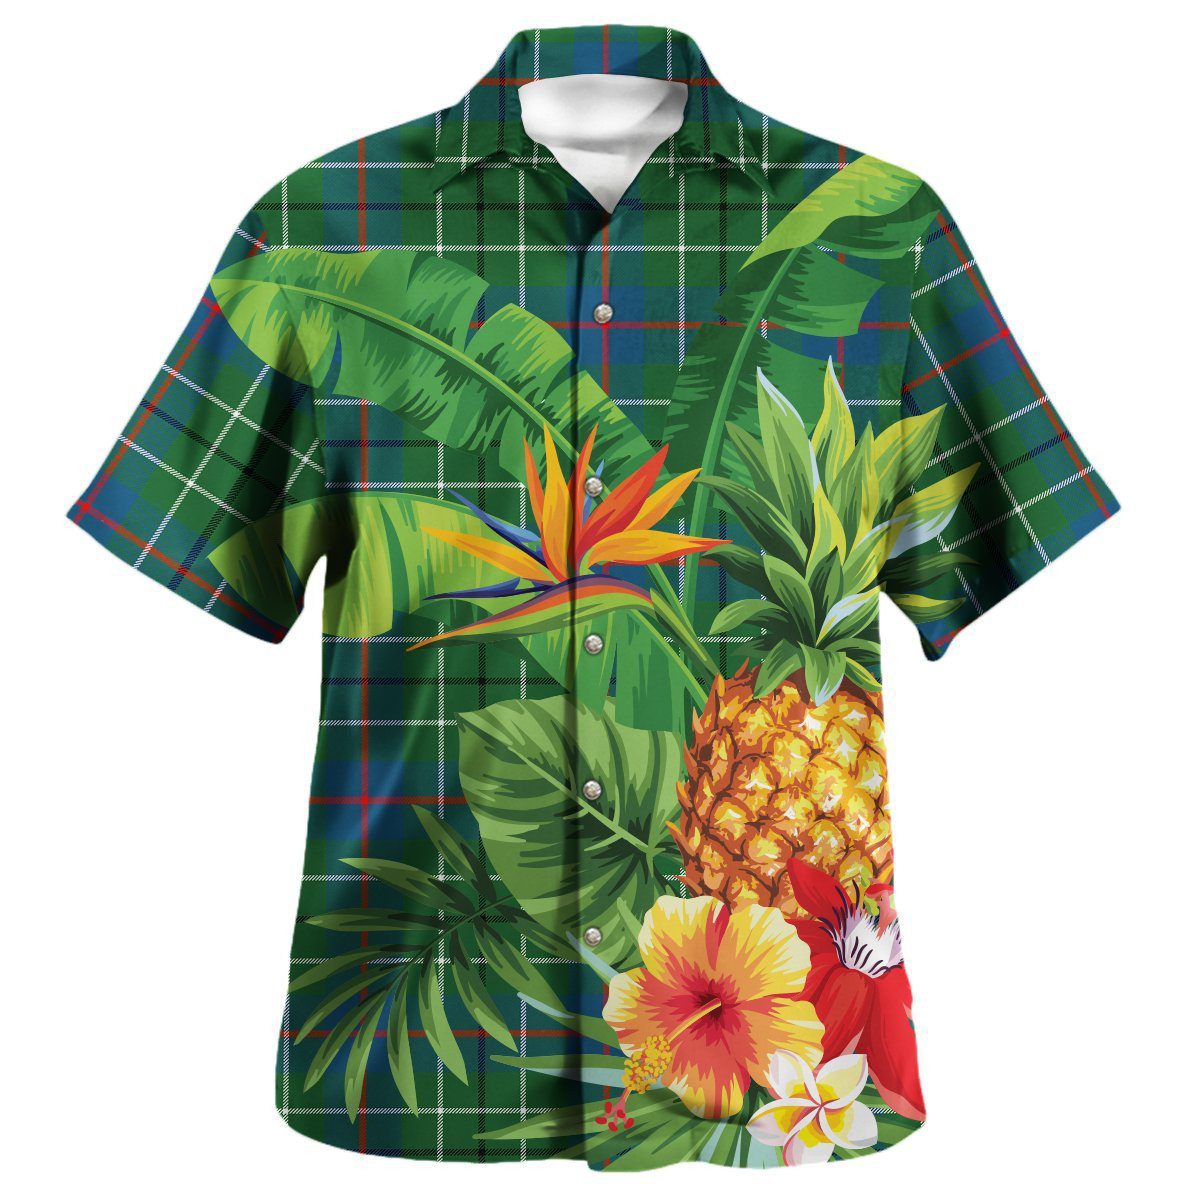 Duncan Ancient Tartan Aloha Shirt version 2